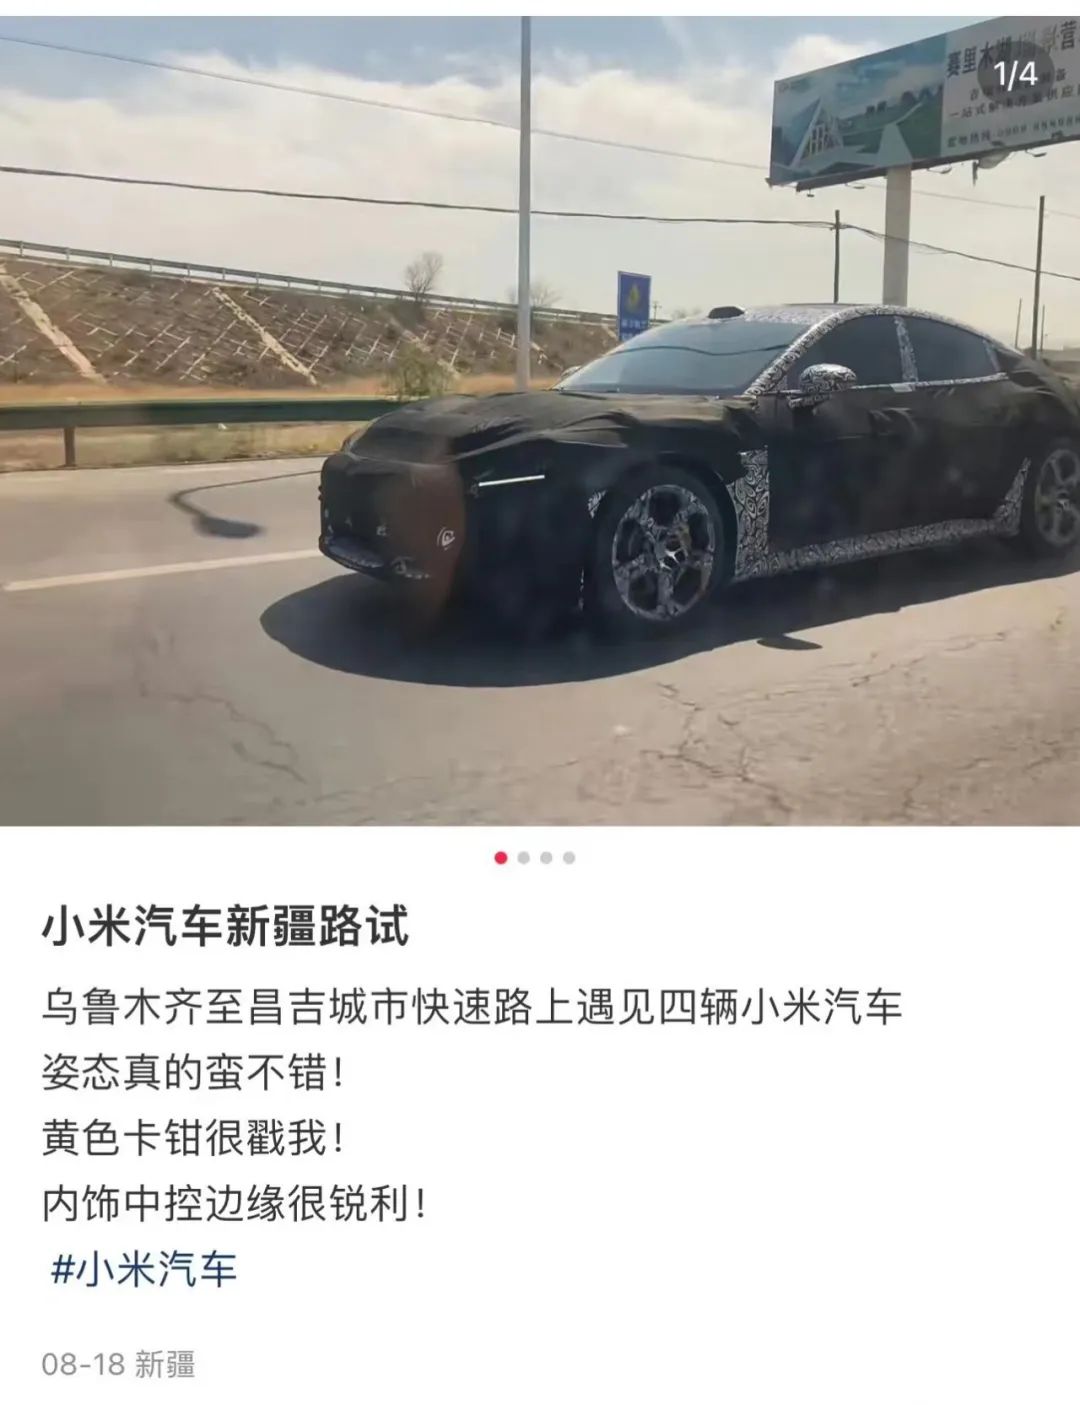 由北汽代工、或明年上市 小米首款汽车SU7长这样-中国质量新闻网